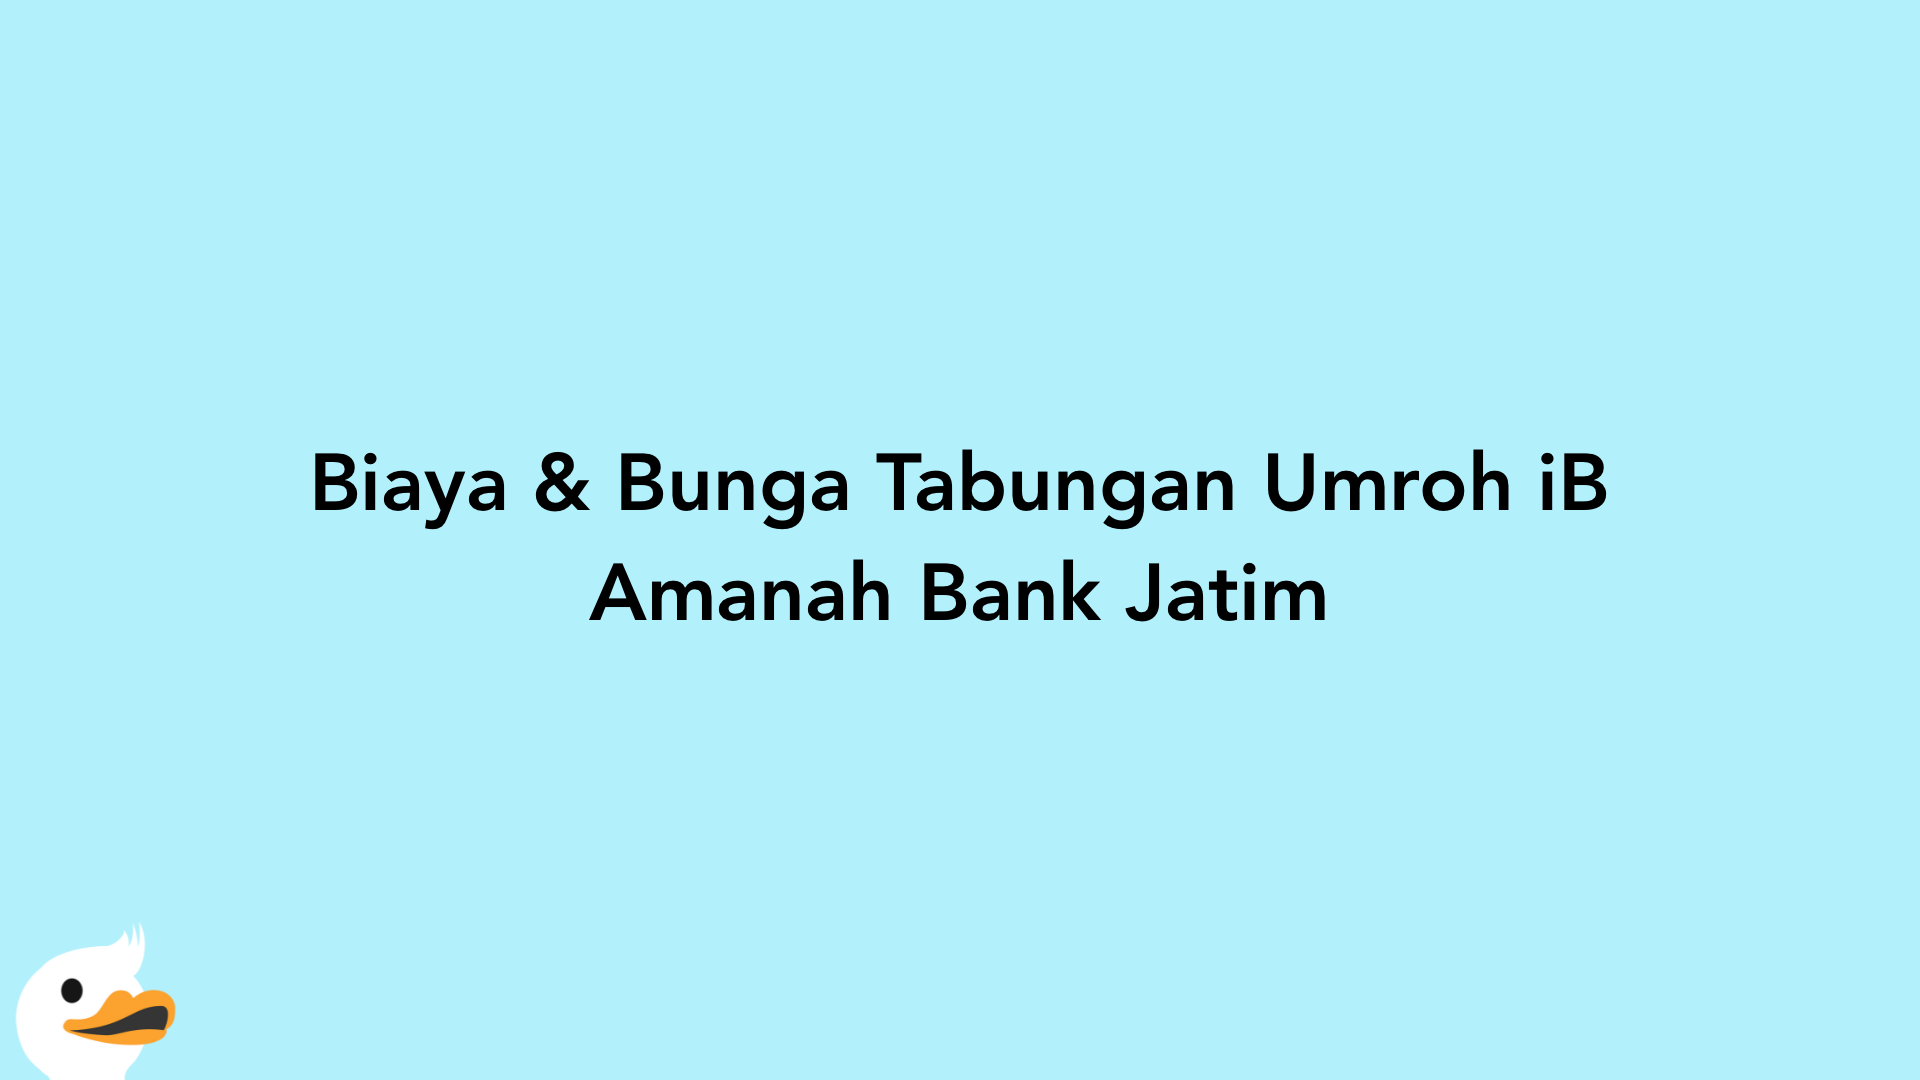 Biaya & Bunga Tabungan Umroh iB Amanah Bank Jatim